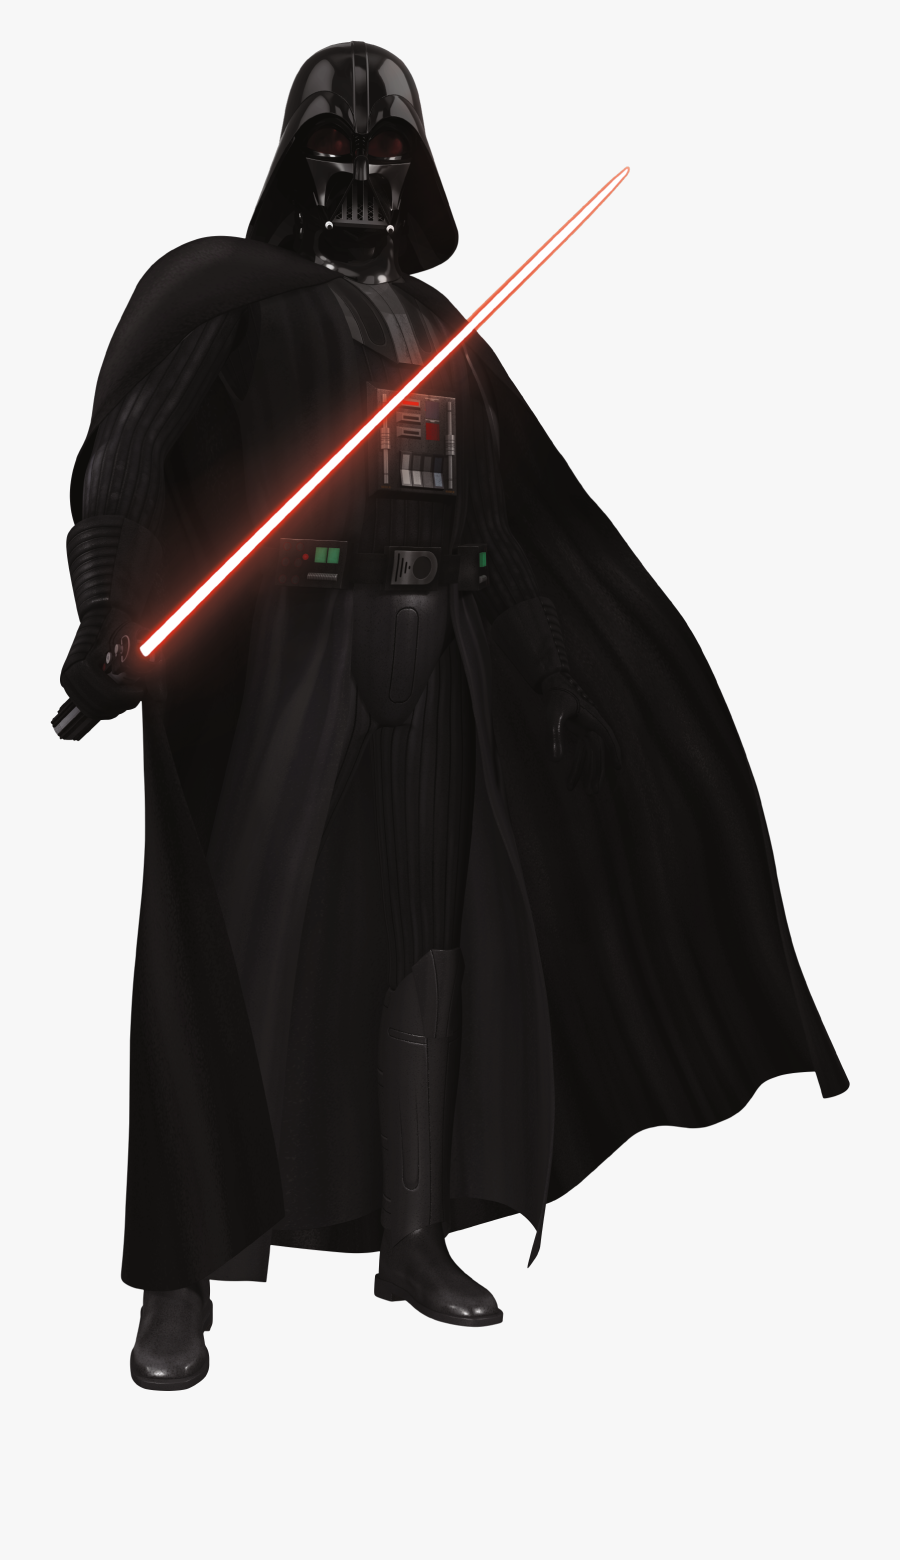 Rebels Darth Vader Render 1 - Darth Vader Star Wars Png, Transparent Clipart